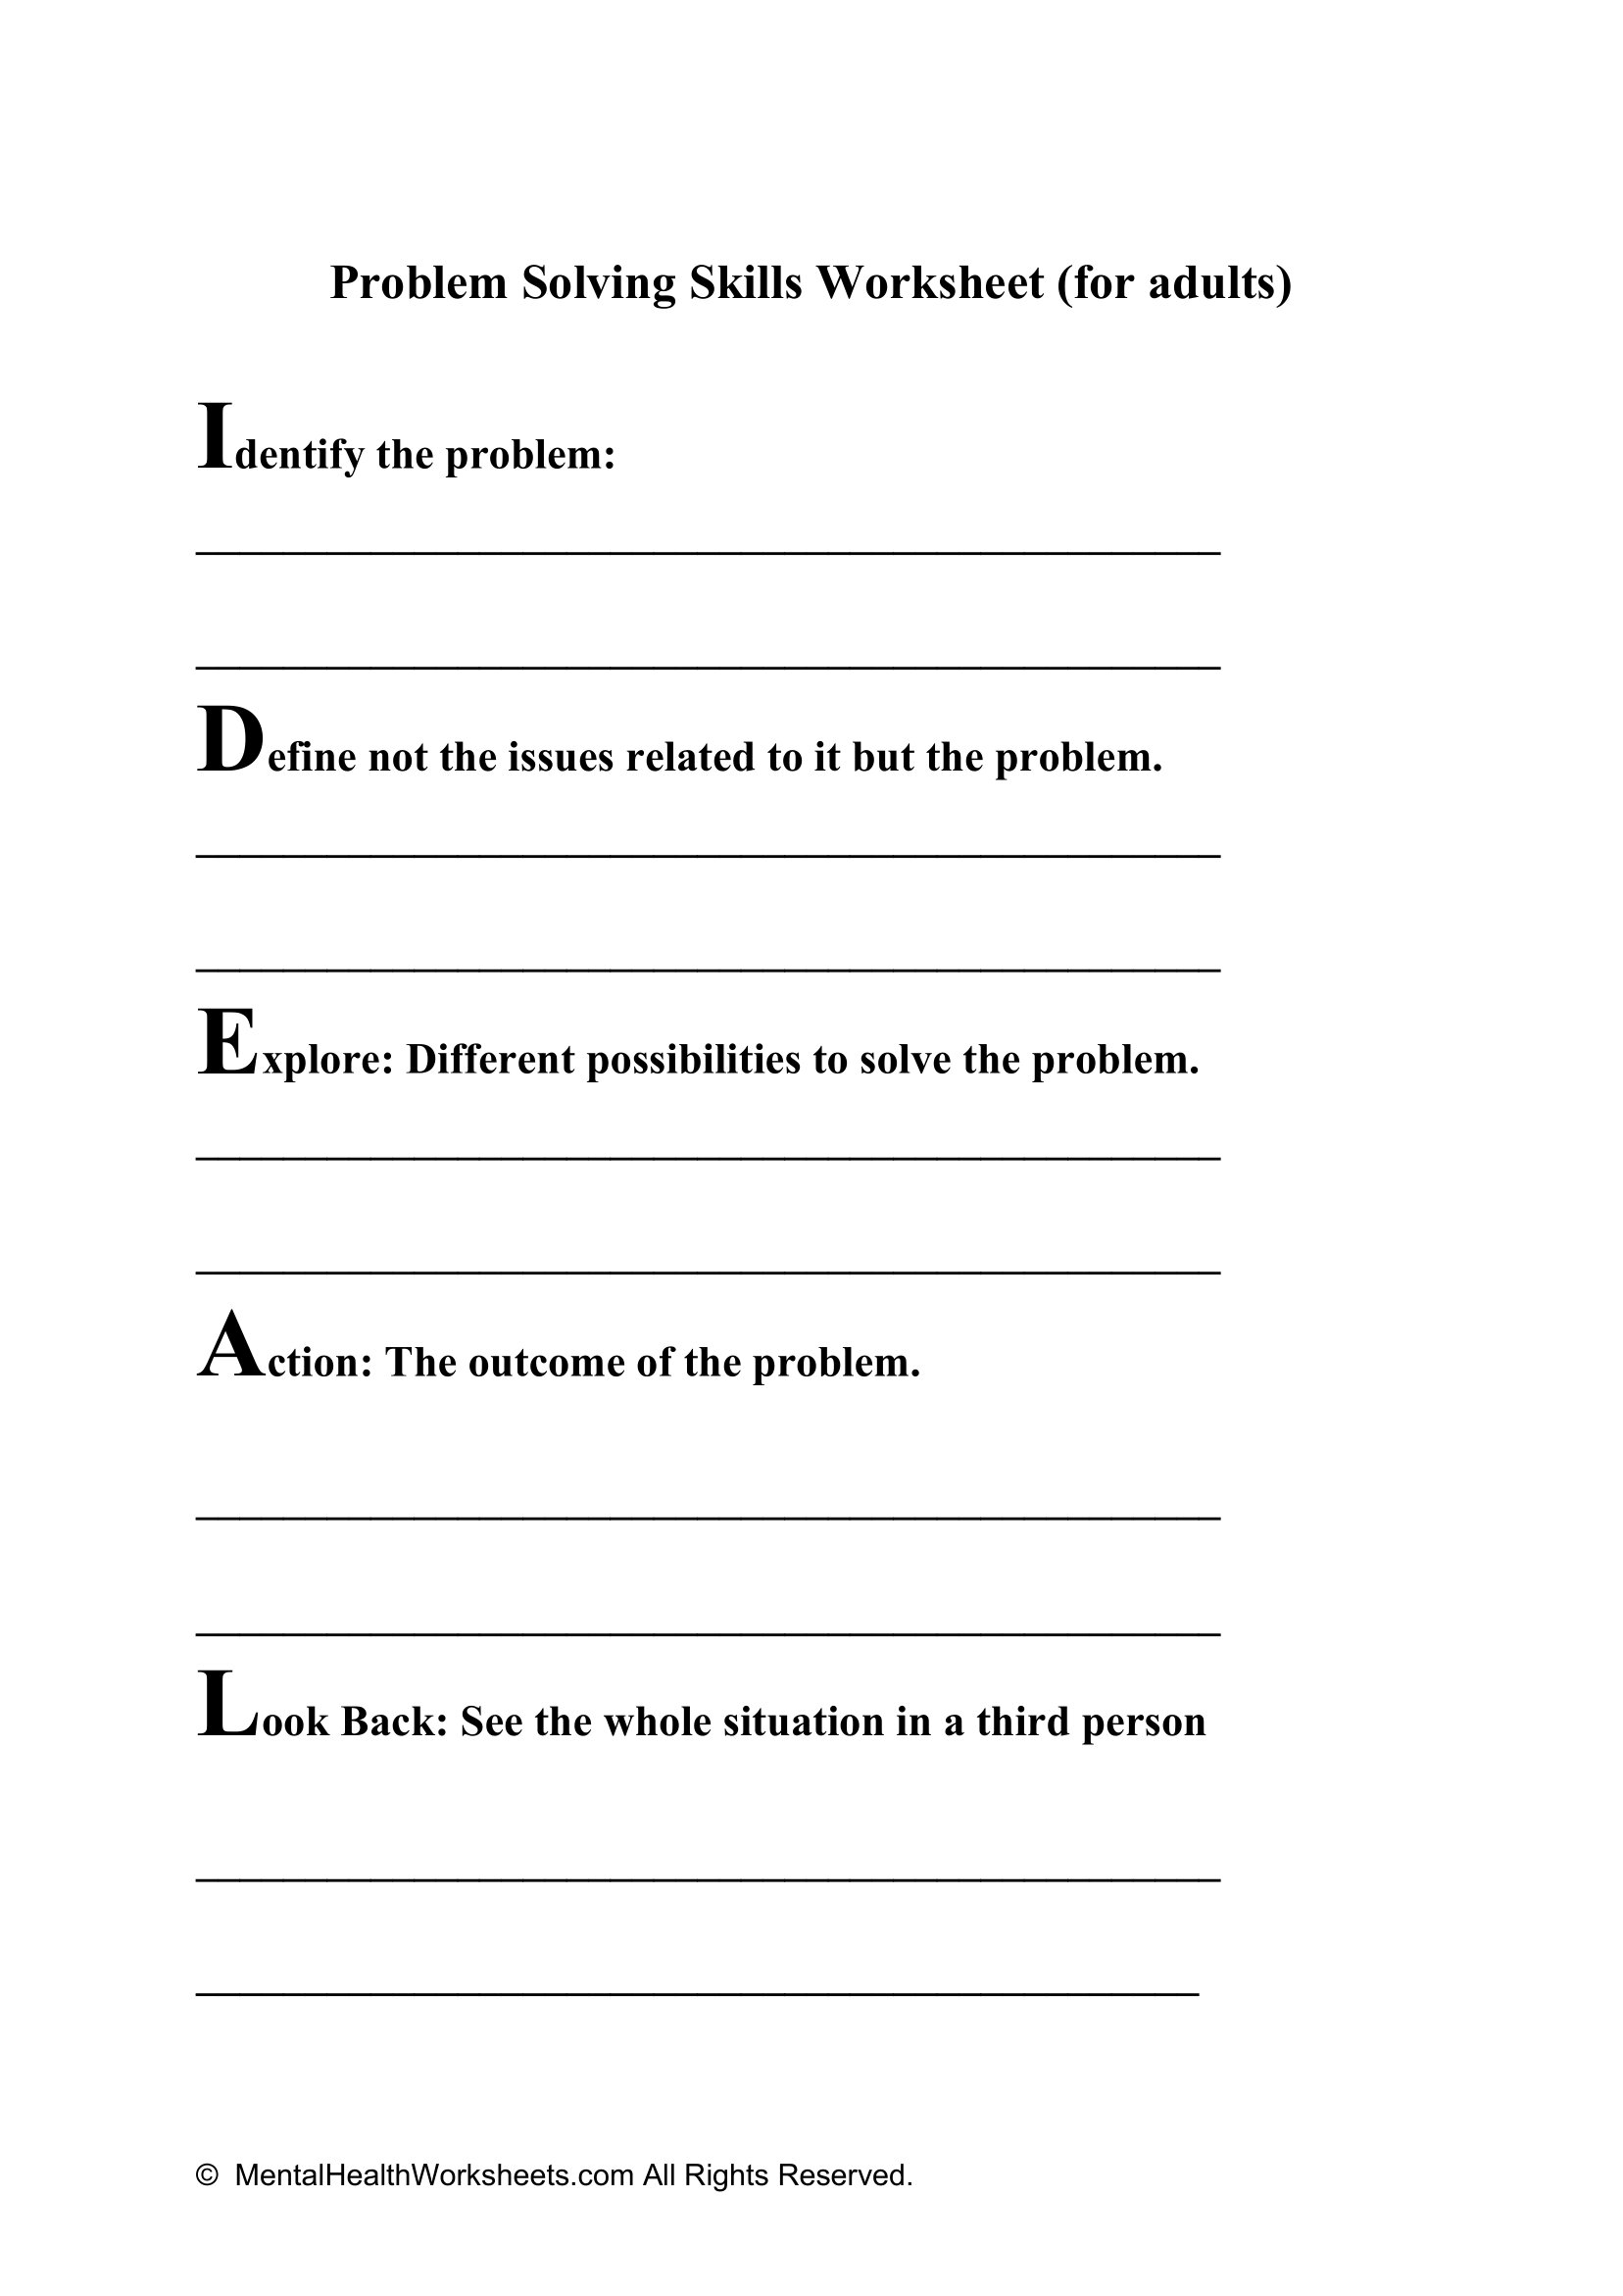 Problem Solving Skills Worksheet for Adults Mental 